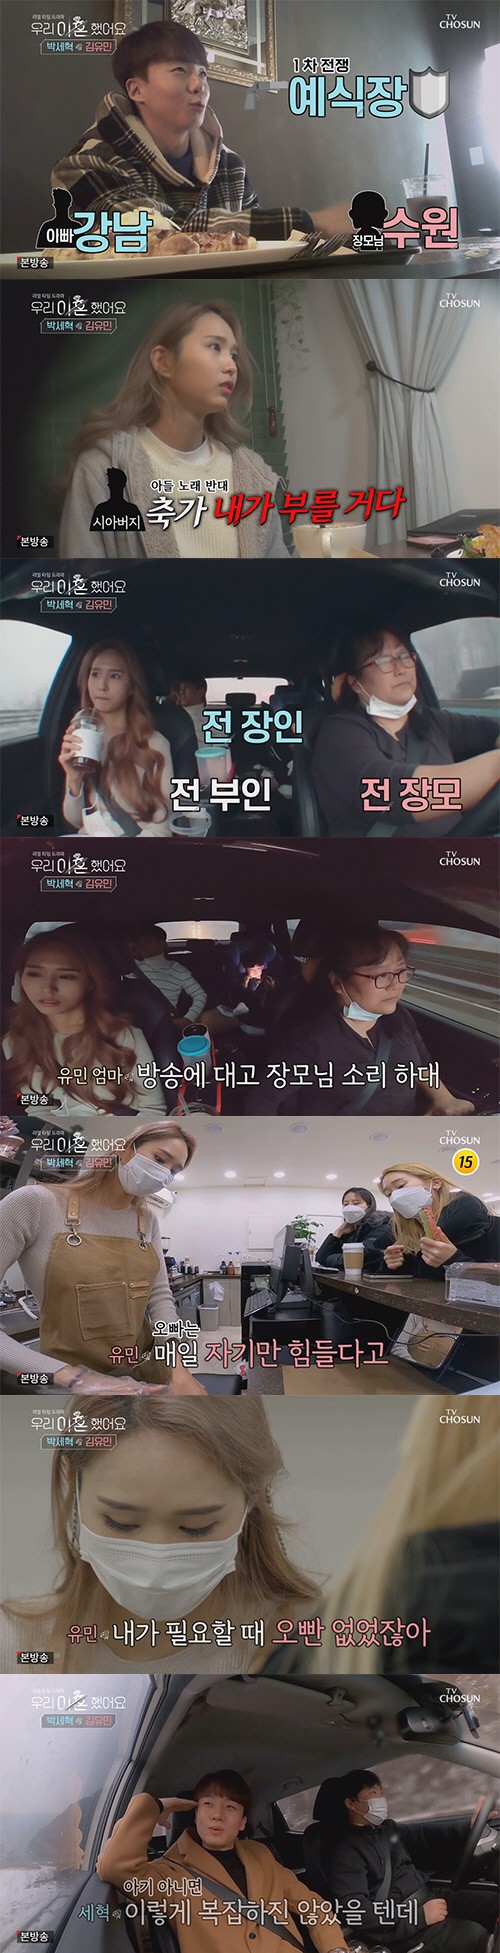 박세혁-김유민, 6개월 만에 초고속 이혼커플 등장…풀리지 않는 섭섭함('우이혼')